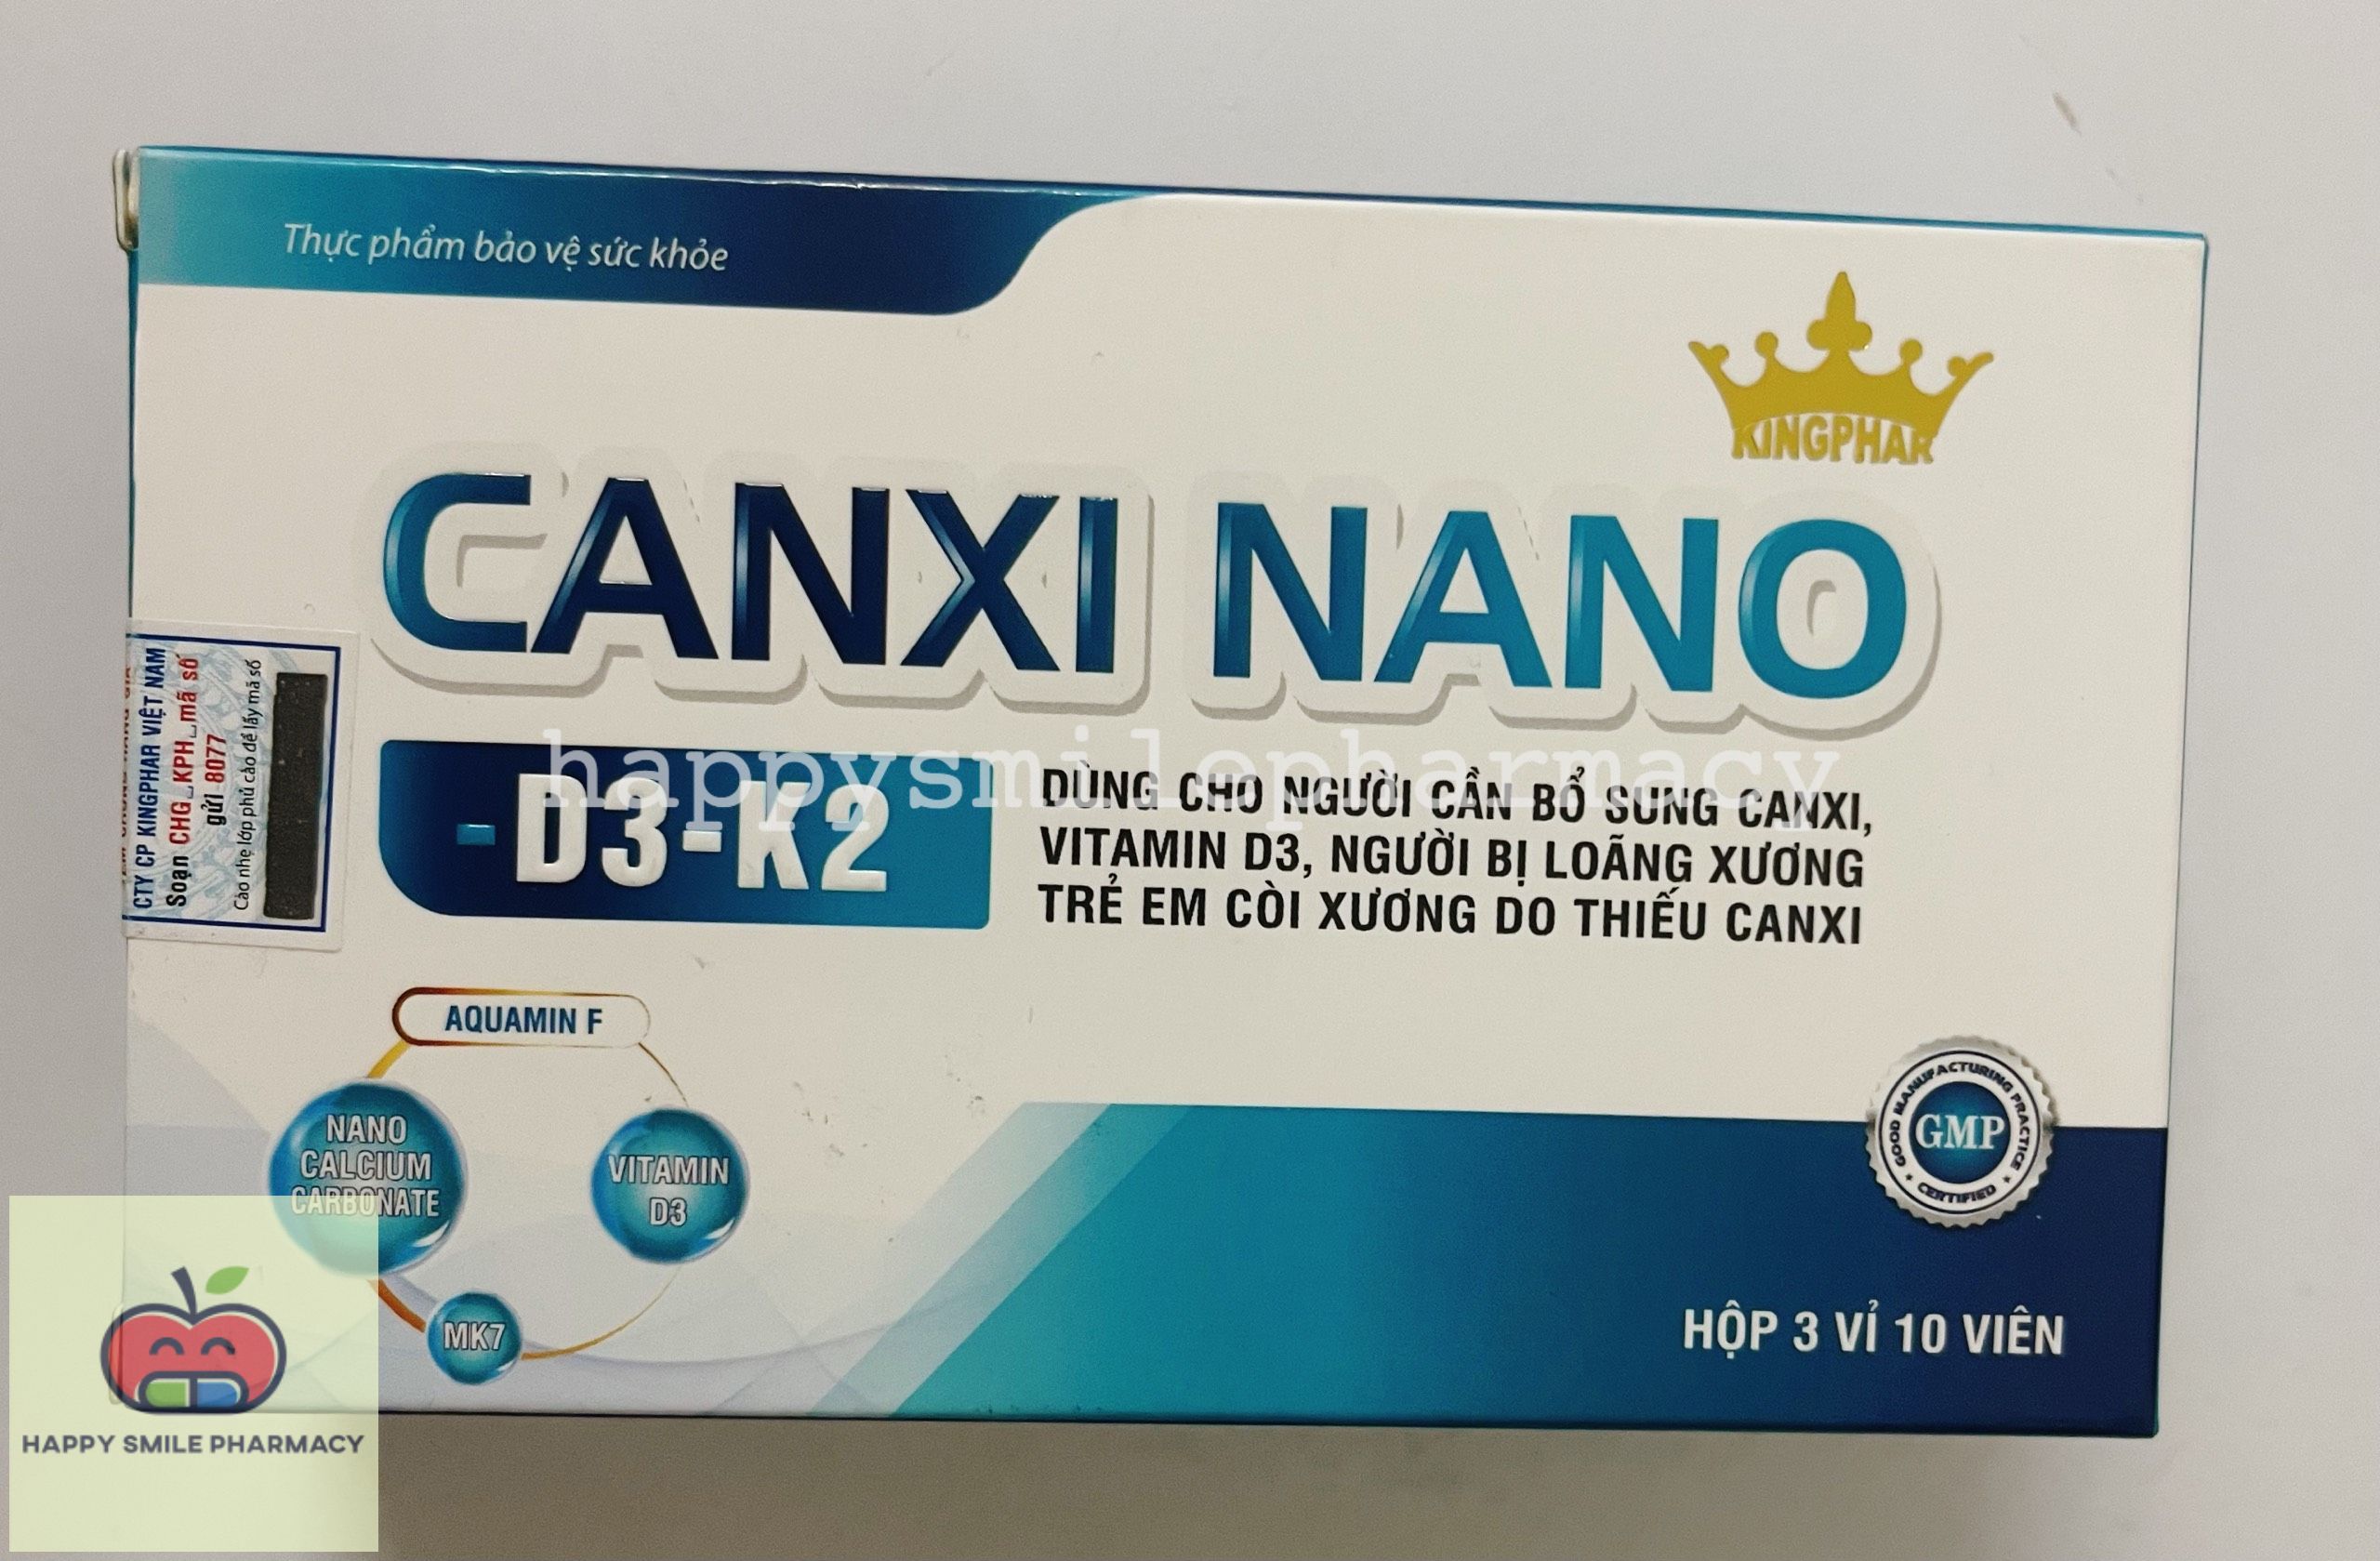 CANXI NANO D3 K2 30 viên - bổ sung canxi và vitamin